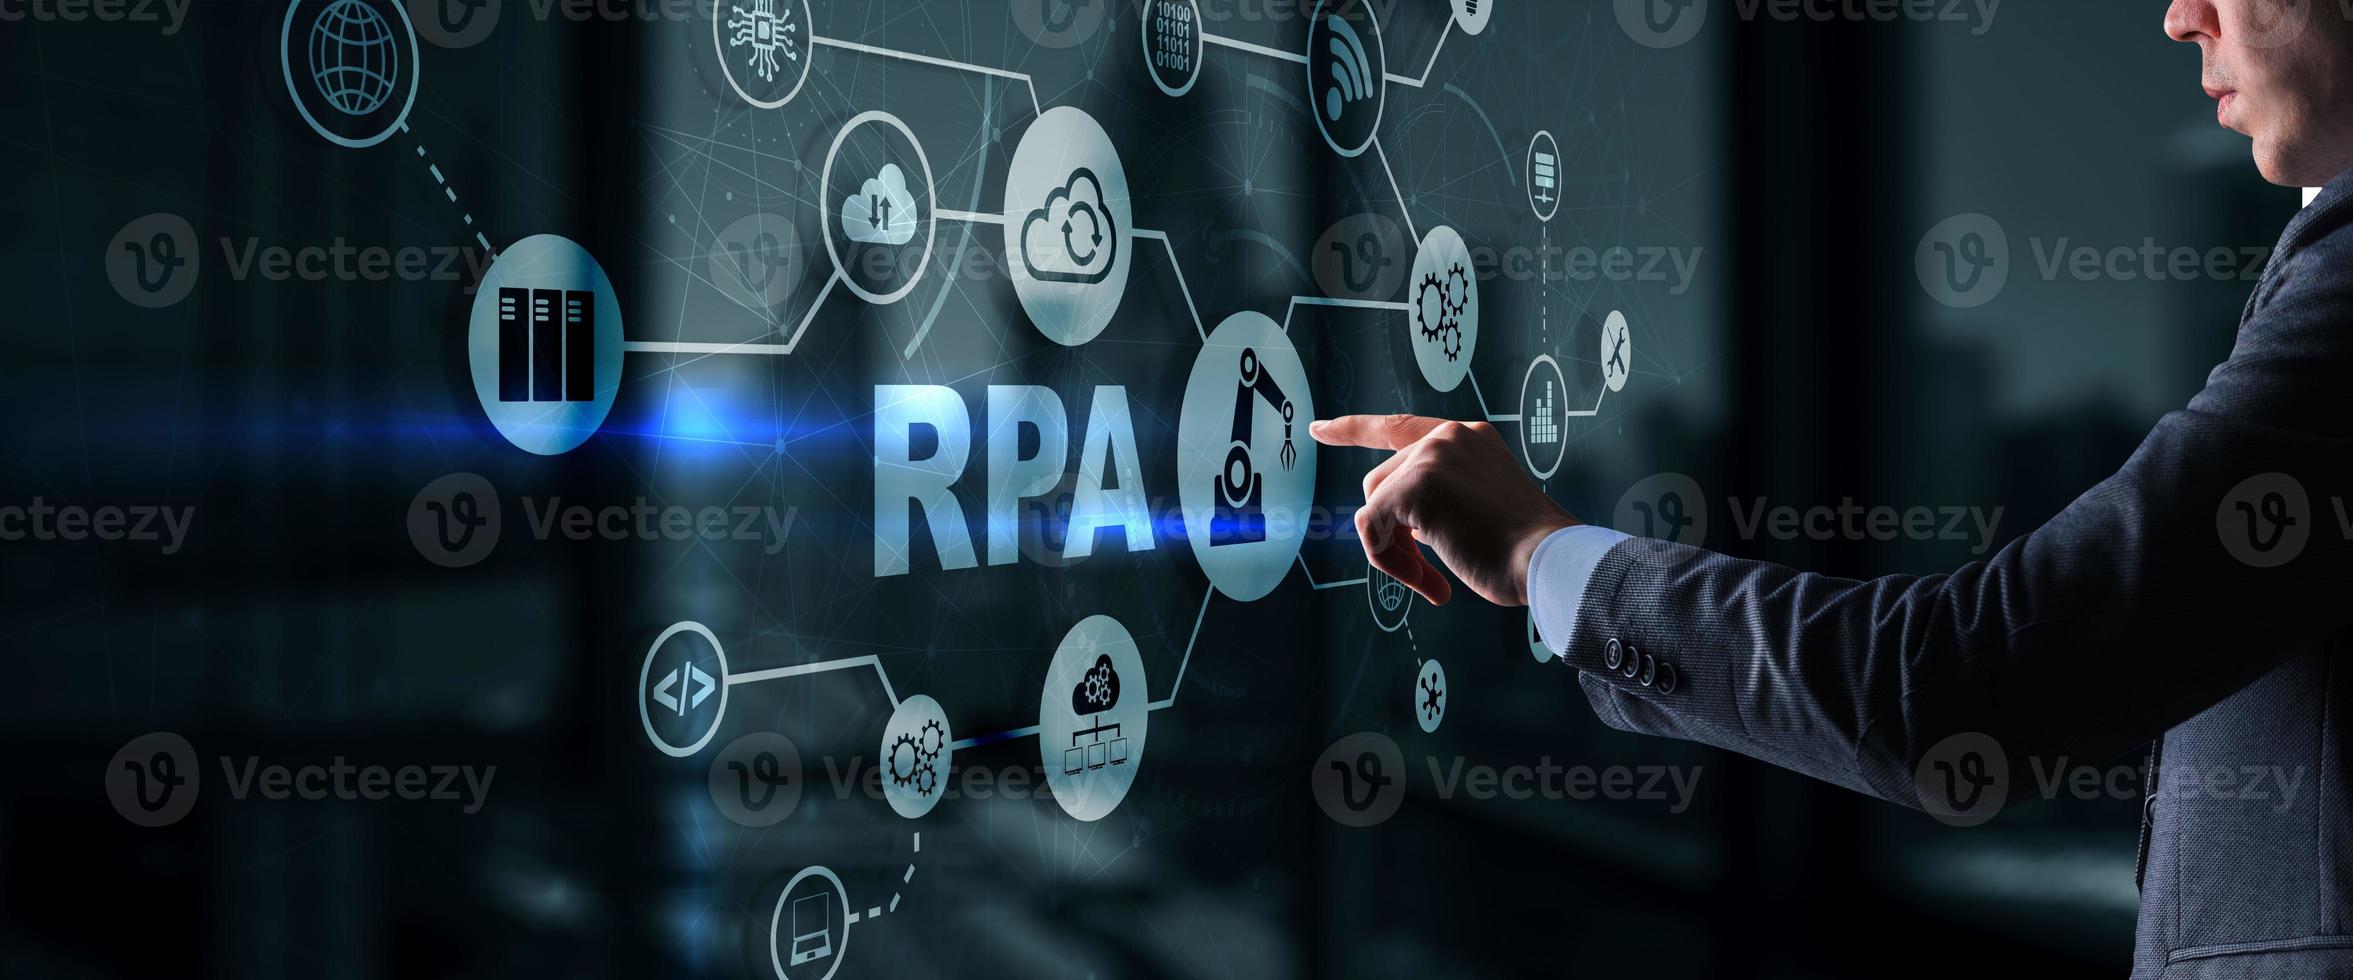 rpa. concepto de automatización de procesos robóticos en pantalla virtual foto